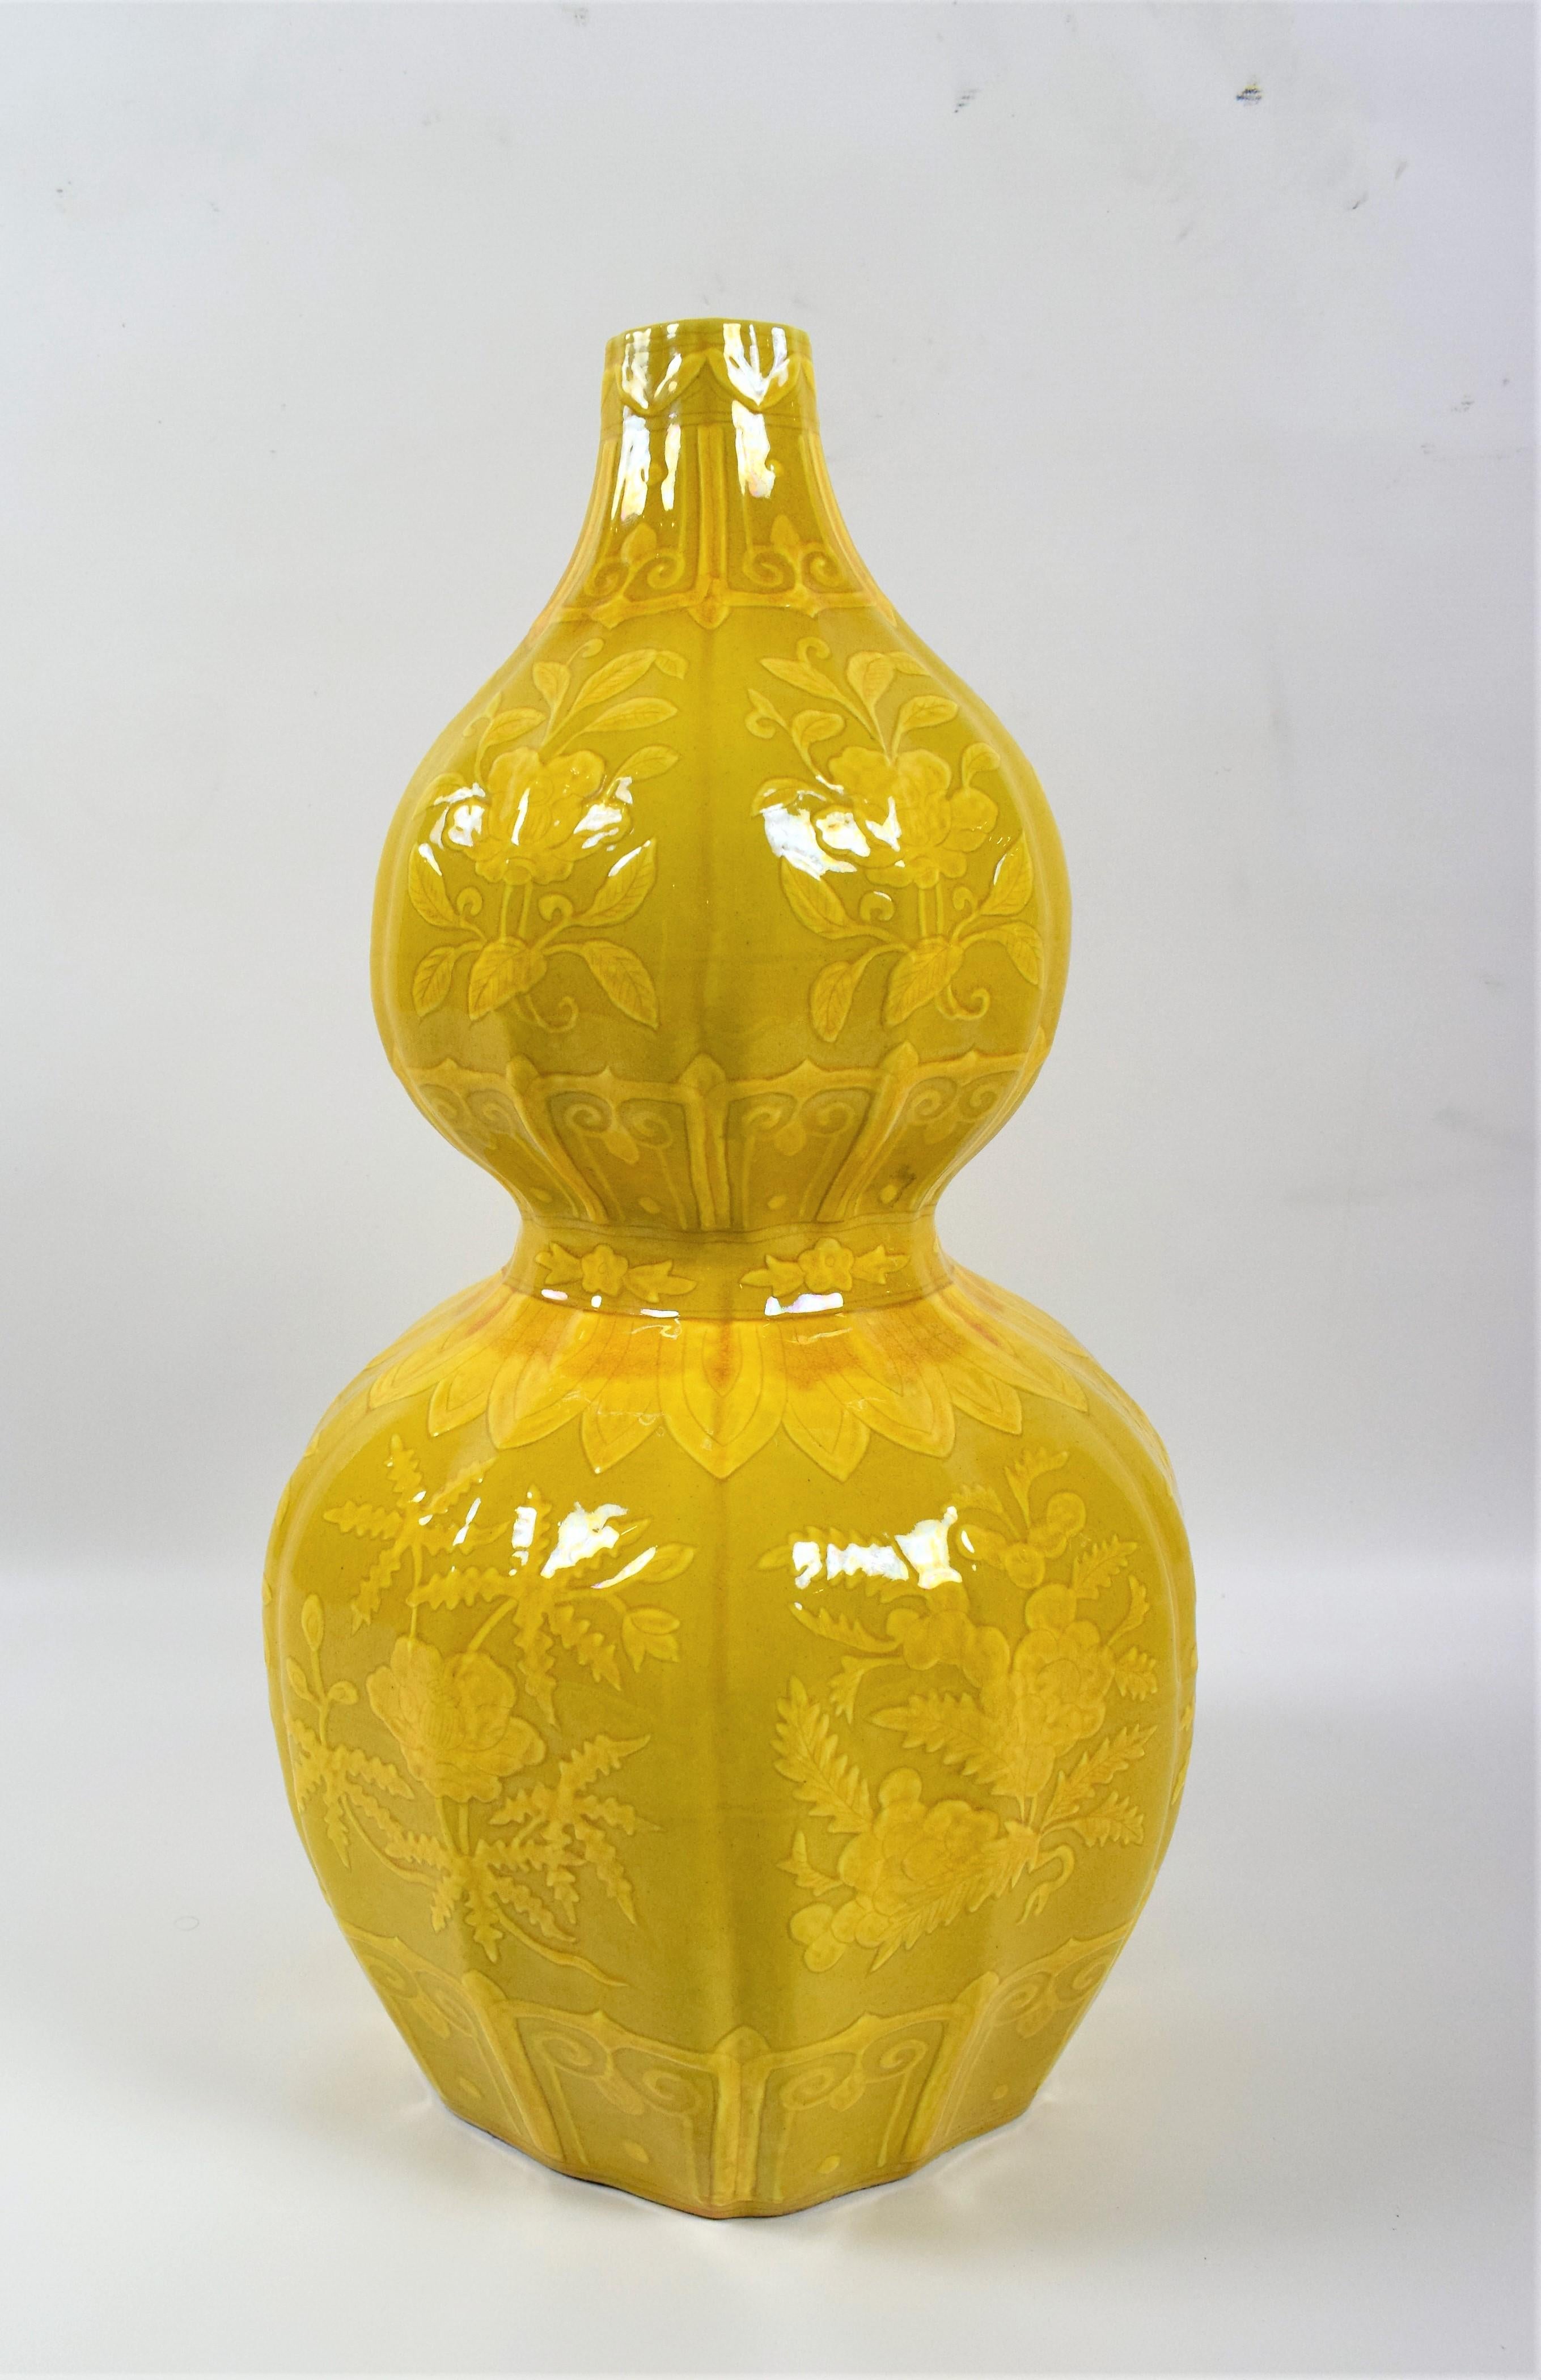 Ein atemberaubendes Paar asiatischer Vasen aus chinesischem Porzellan, verziert mit einem schönen Blumenmotiv in leuchtend gelber Farbe. Diese Vasen sind in Form von Doppelkürbissen gestaltet, die in der chinesischen Kultur Glück und Wohlstand